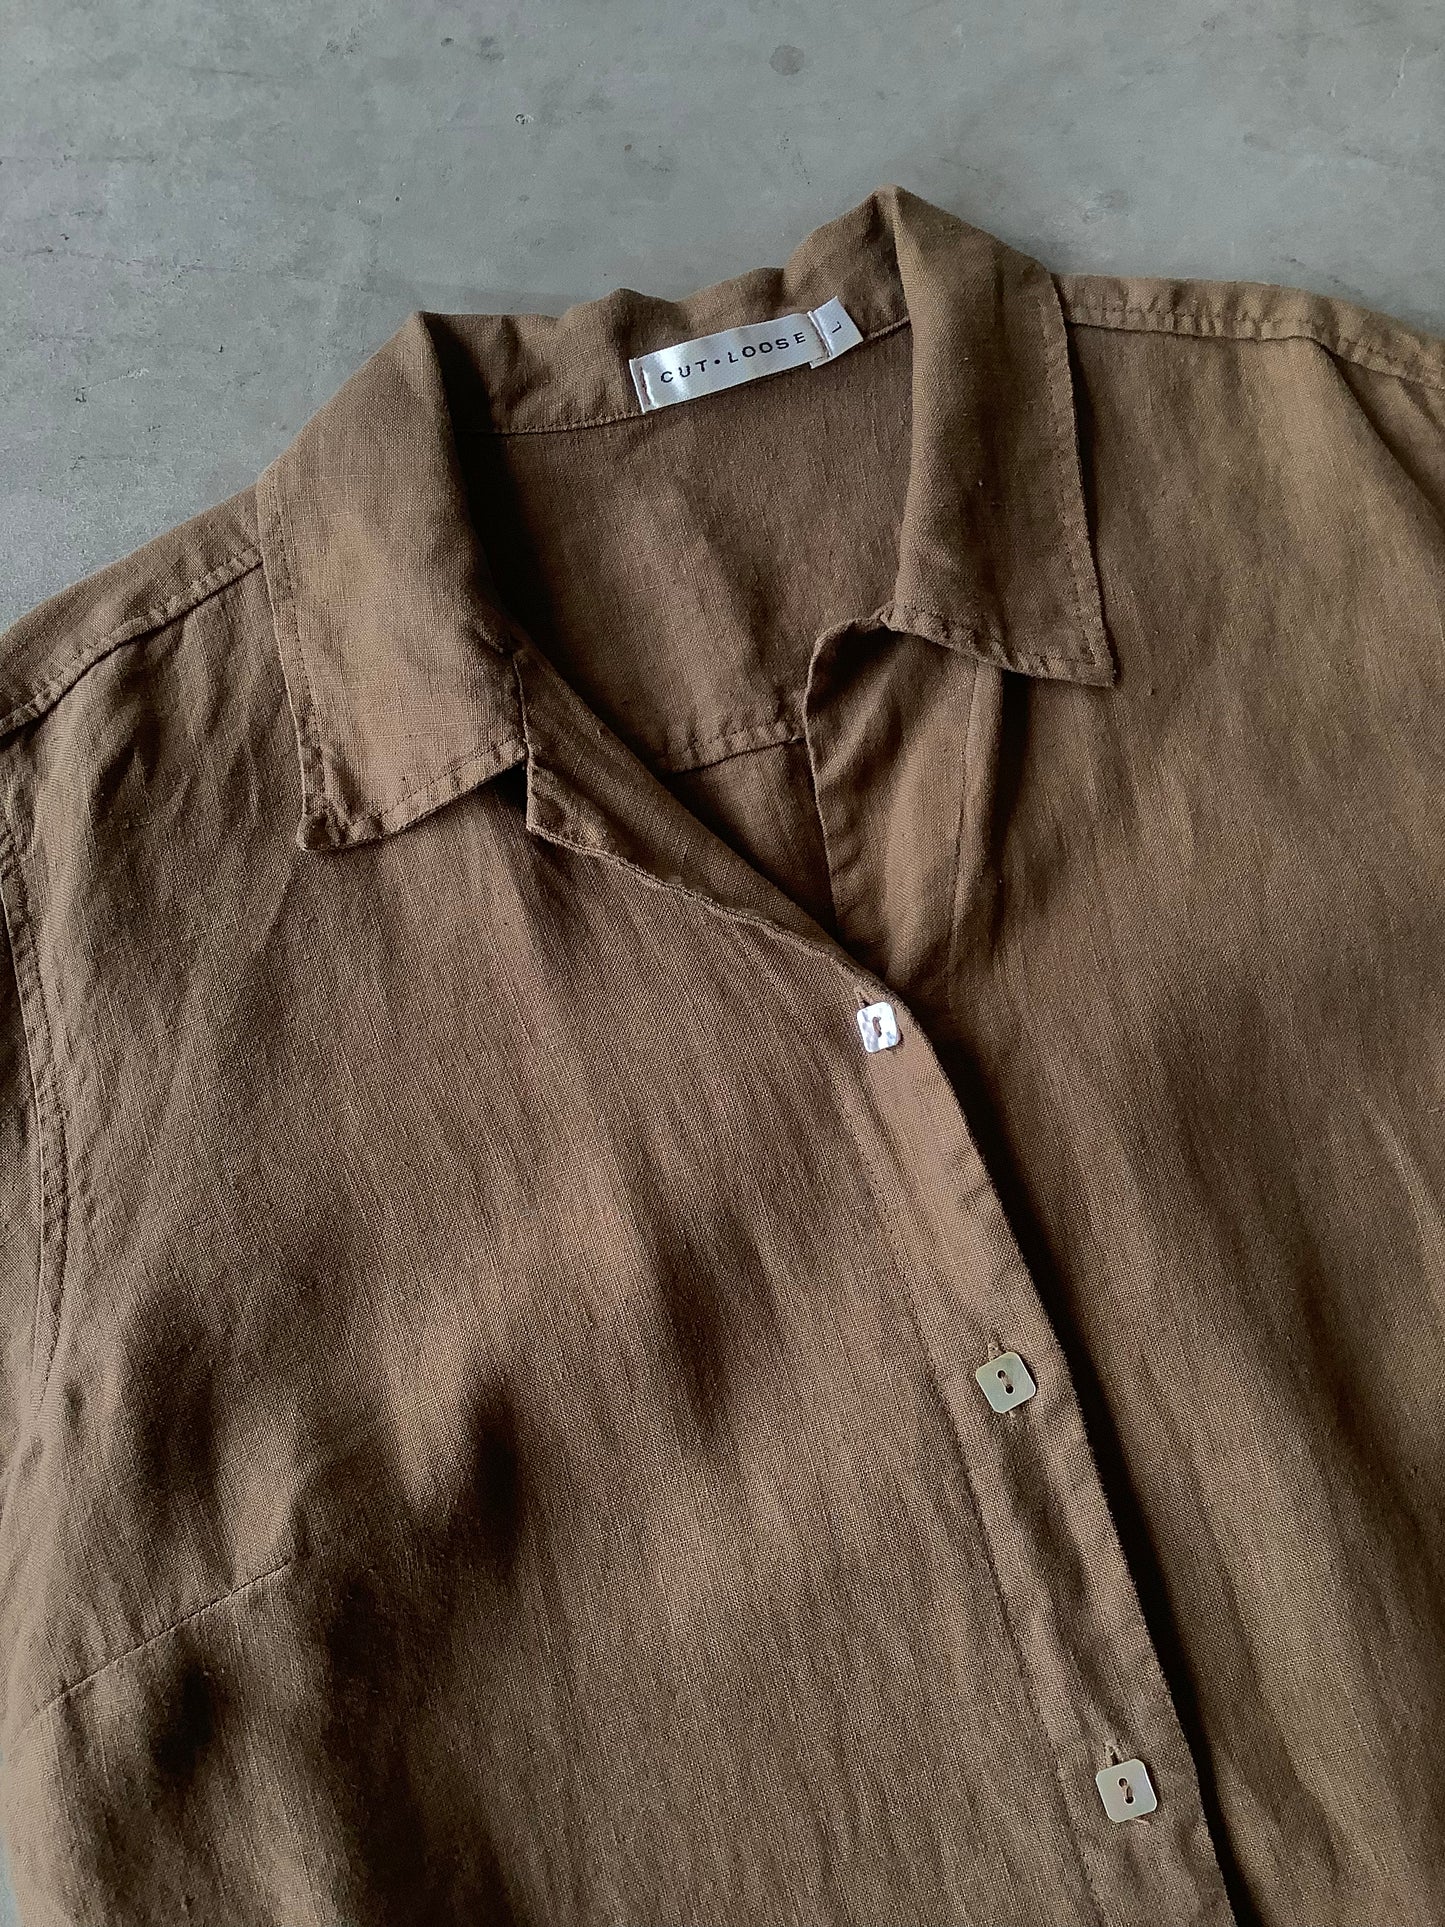 Brown linen long top